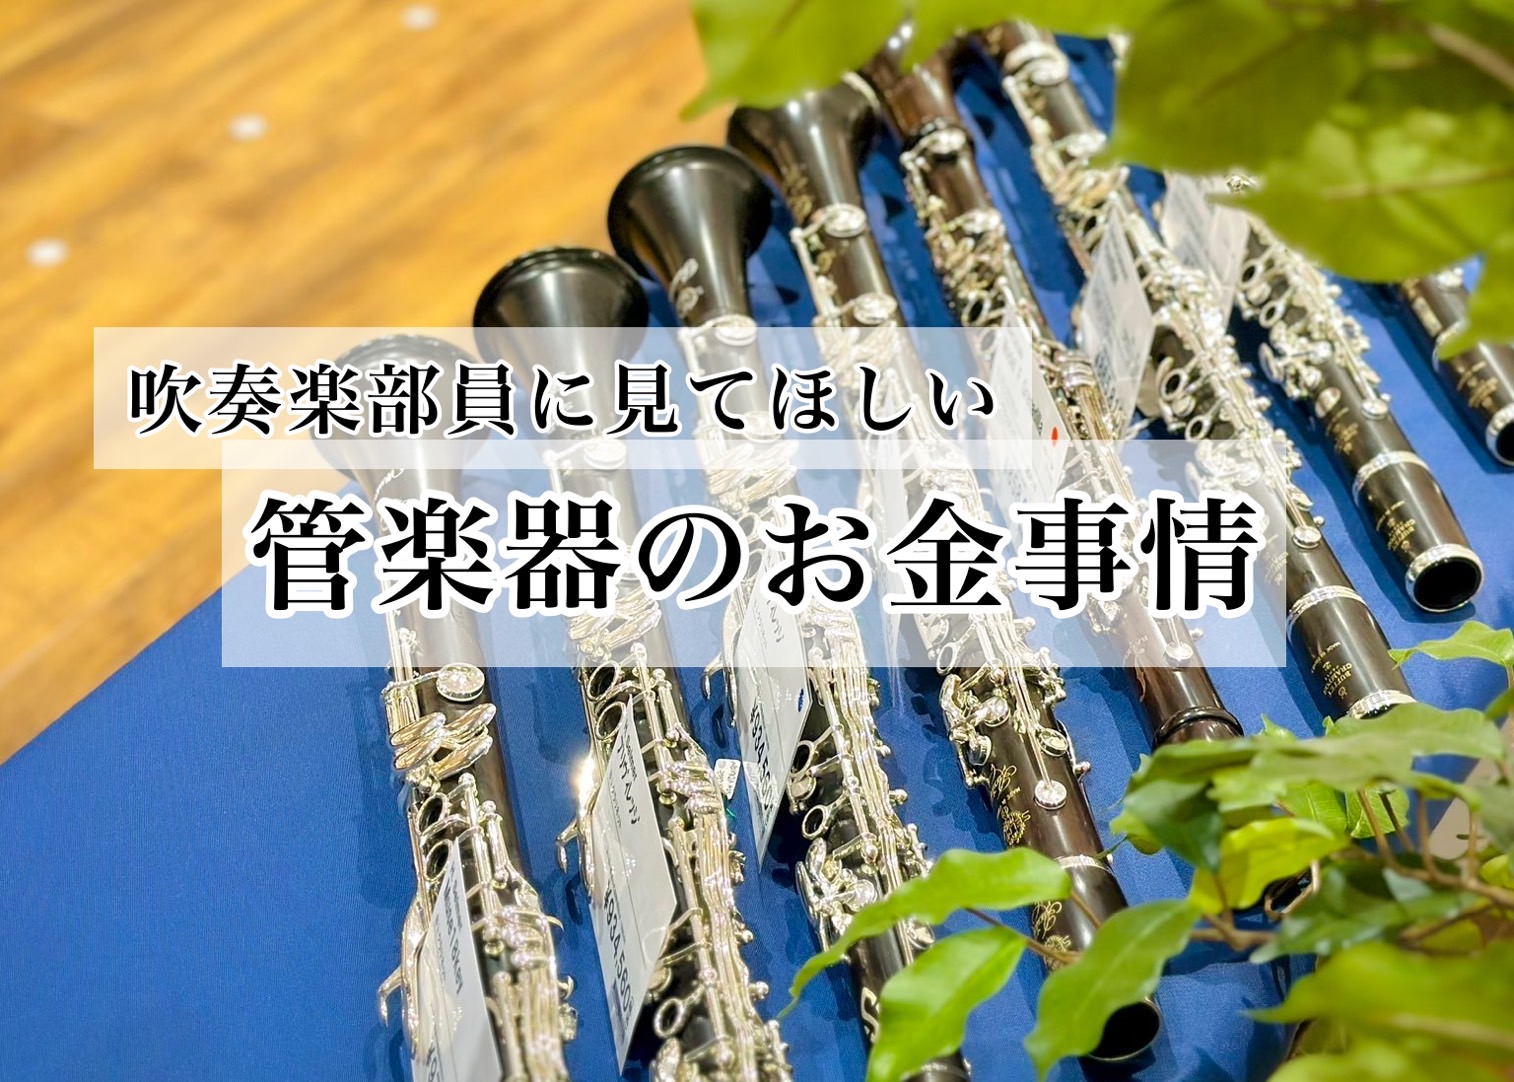 みなさま、こんにちは。島村楽器名古屋名古屋則武新町店の久野です。今回は、学生時代吹奏楽部などの管楽器系部活動に所属していた私から、普段はあんまり聞けないお金の話をたっぷりしていきます。経験者にしか分からない部活動の内部事情や、マイ楽器について触れていきますので、ぜひご参考ください。 CONTENTS […]